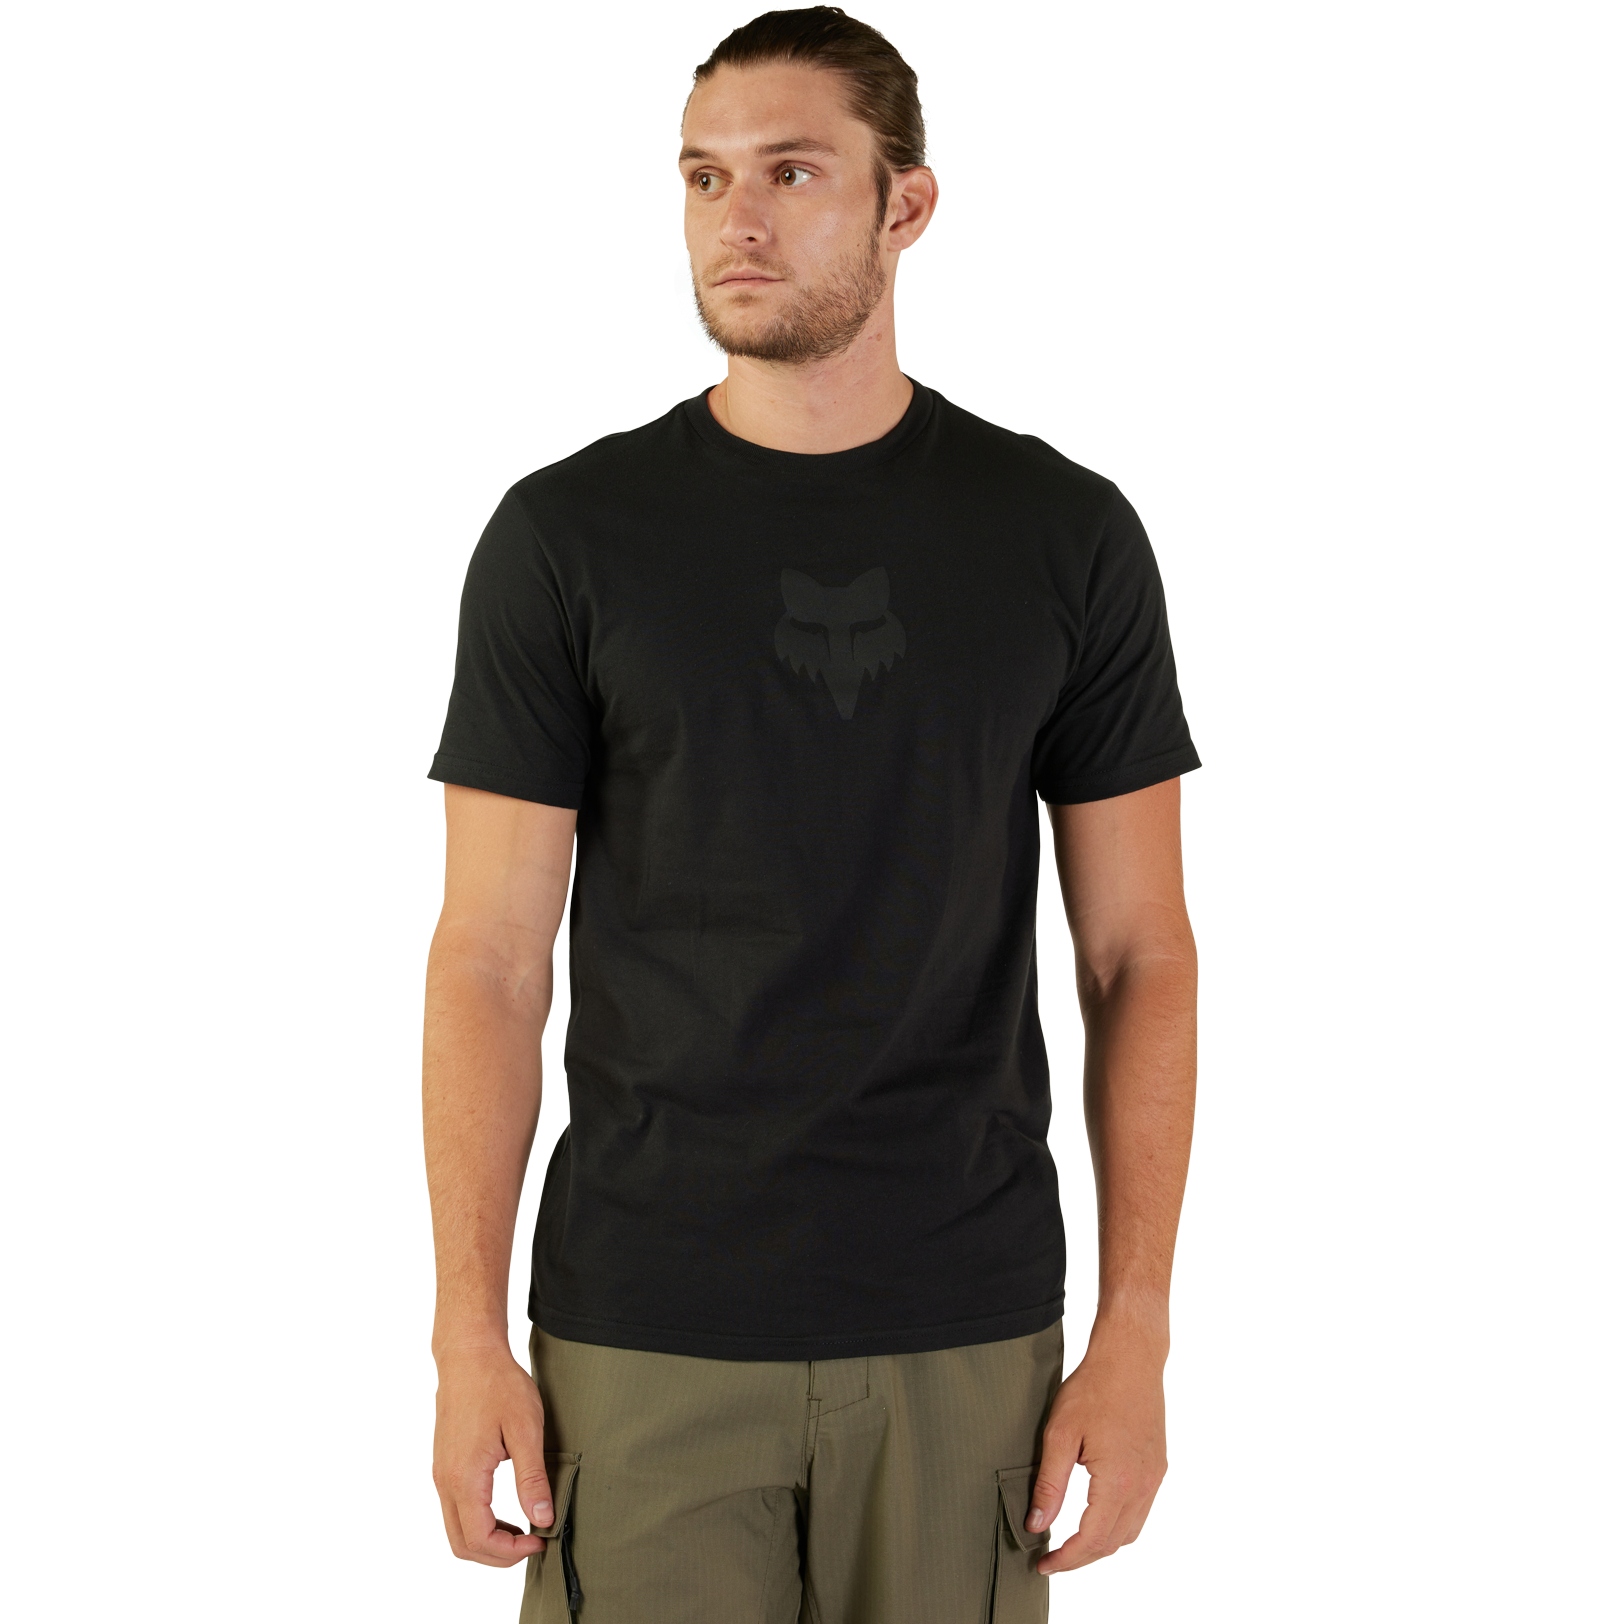 Productfoto van FOX Head Premium T-Shirt Heren - zwart/zwart